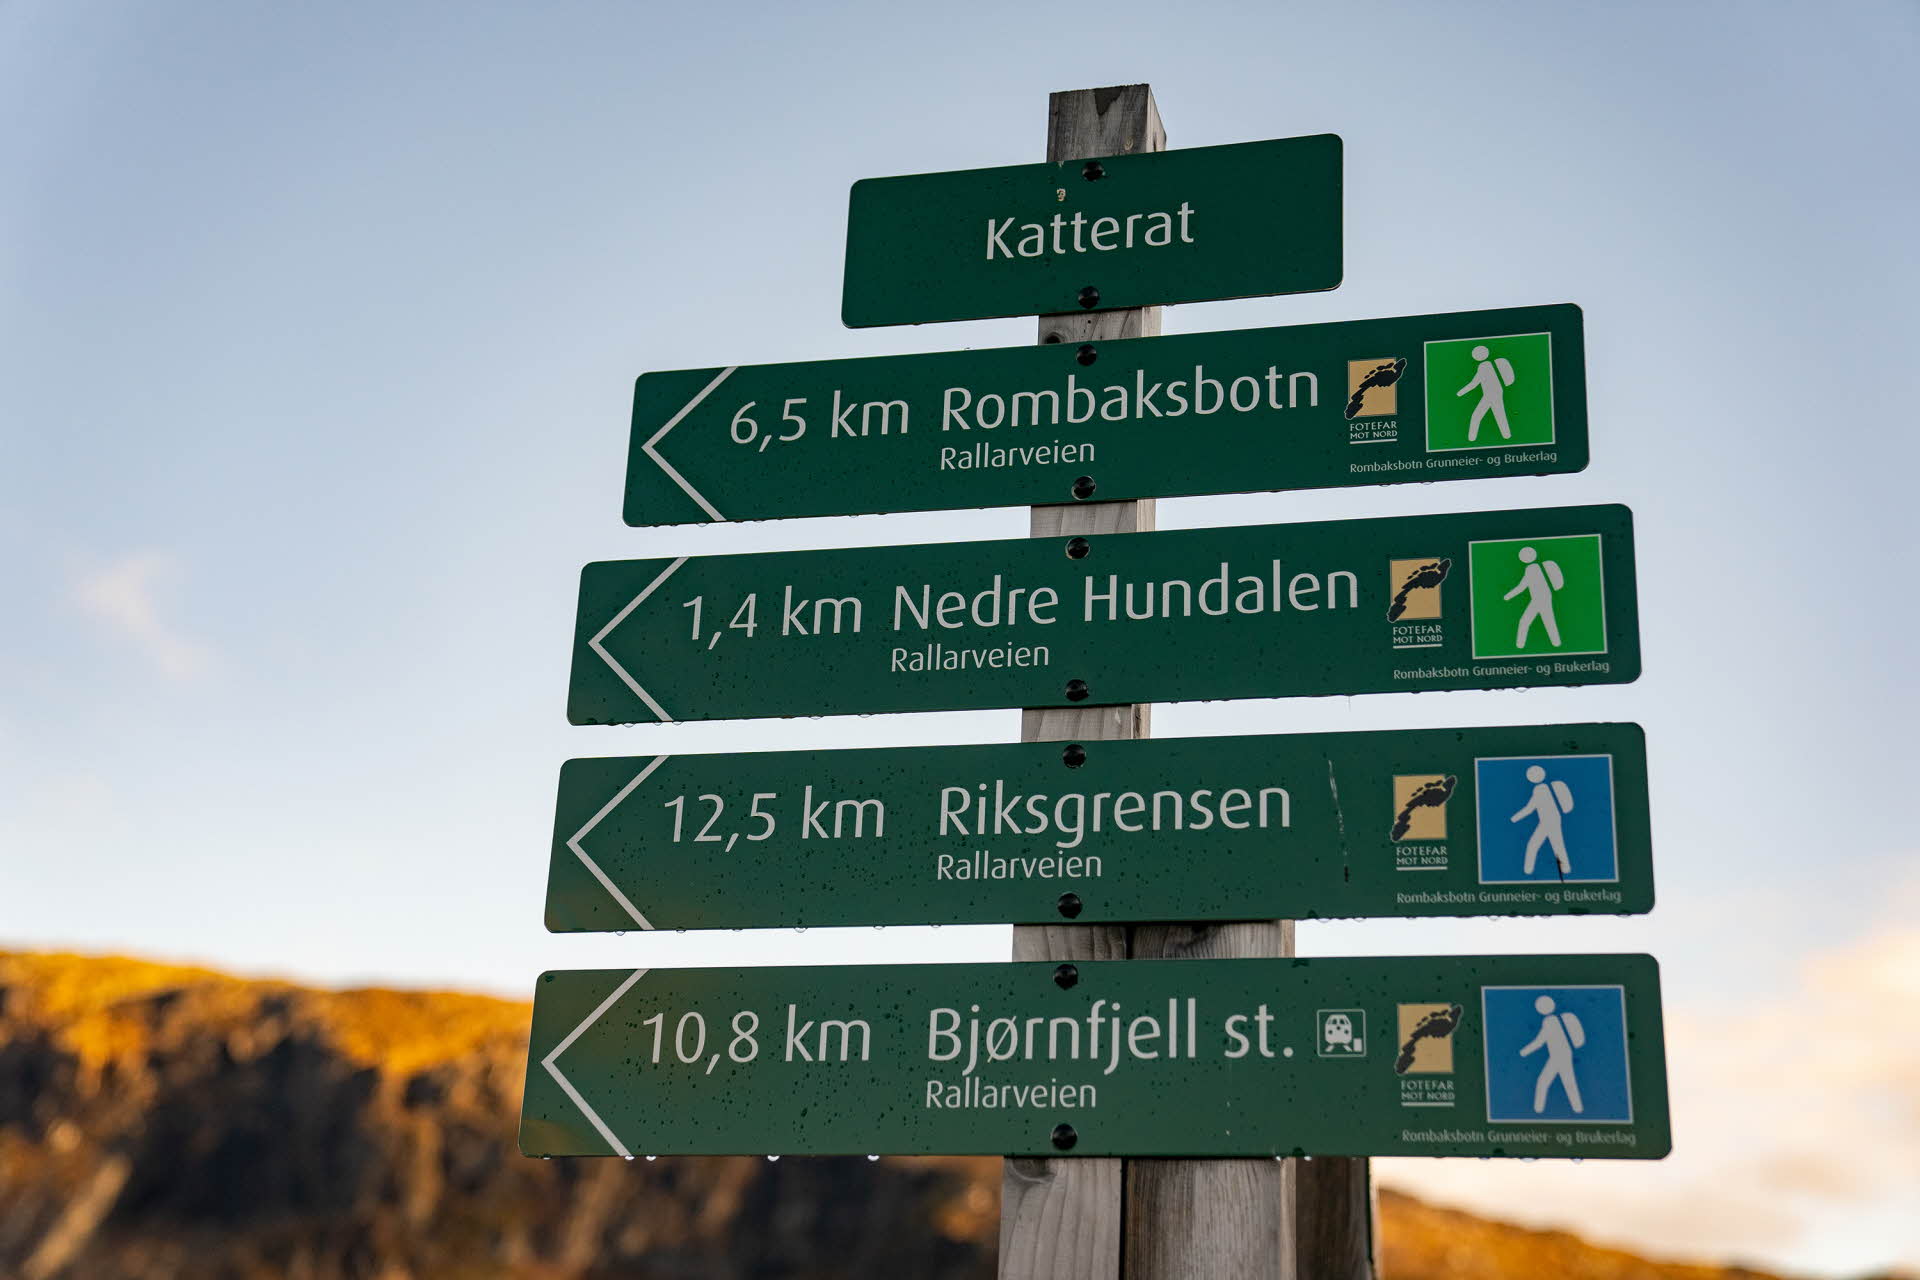 标示着纳尔维克郊外工人之路 (Rallarveien) 附近的徒步线路的标志